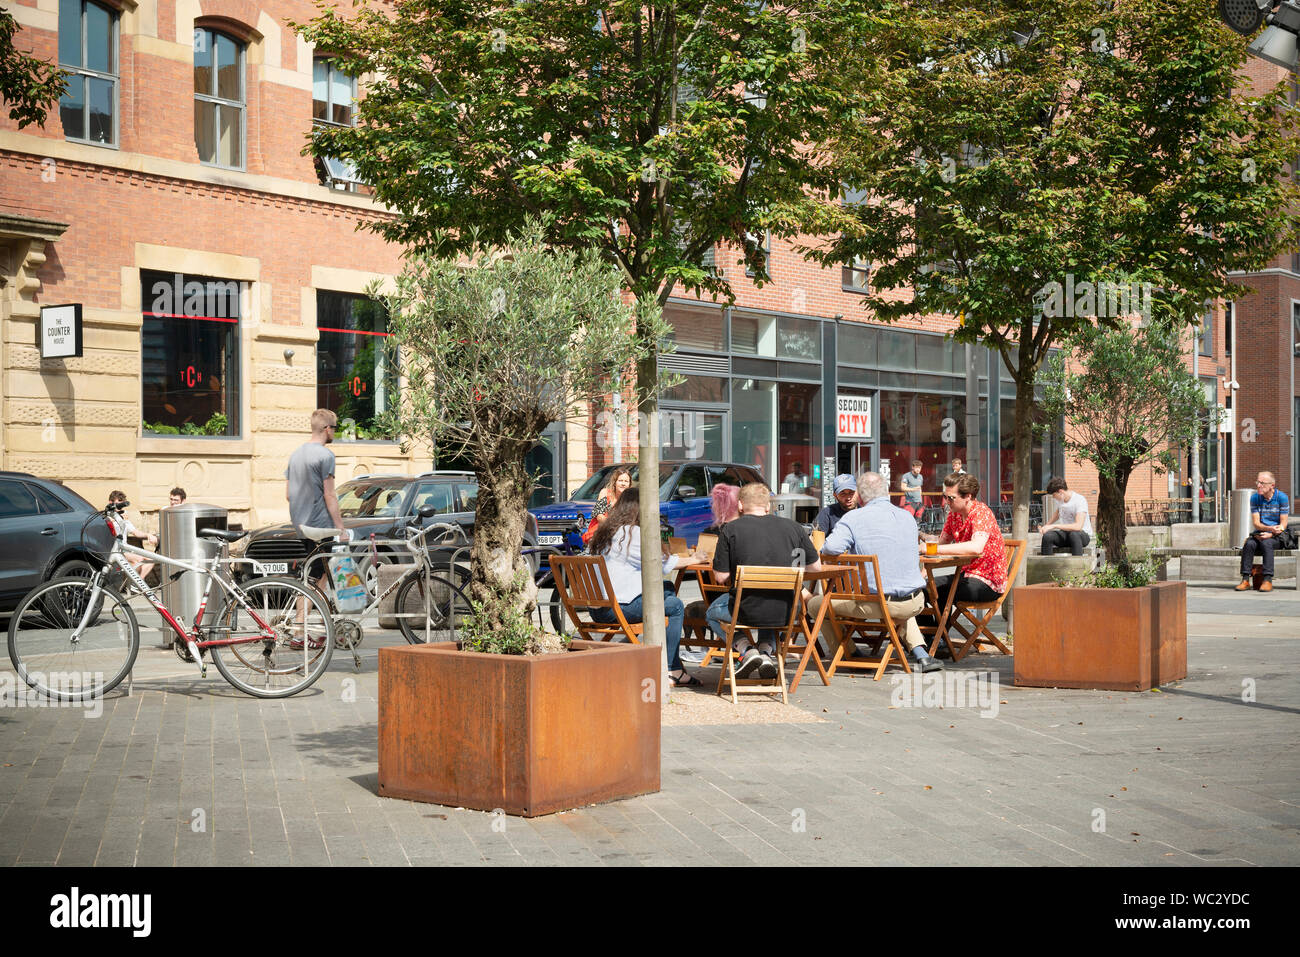 Le persone godono di sole in una piccola piazza tra la cappa Street, Blossom Street e cotone Street in Ancoats, Manchester, Regno Unito. Foto Stock